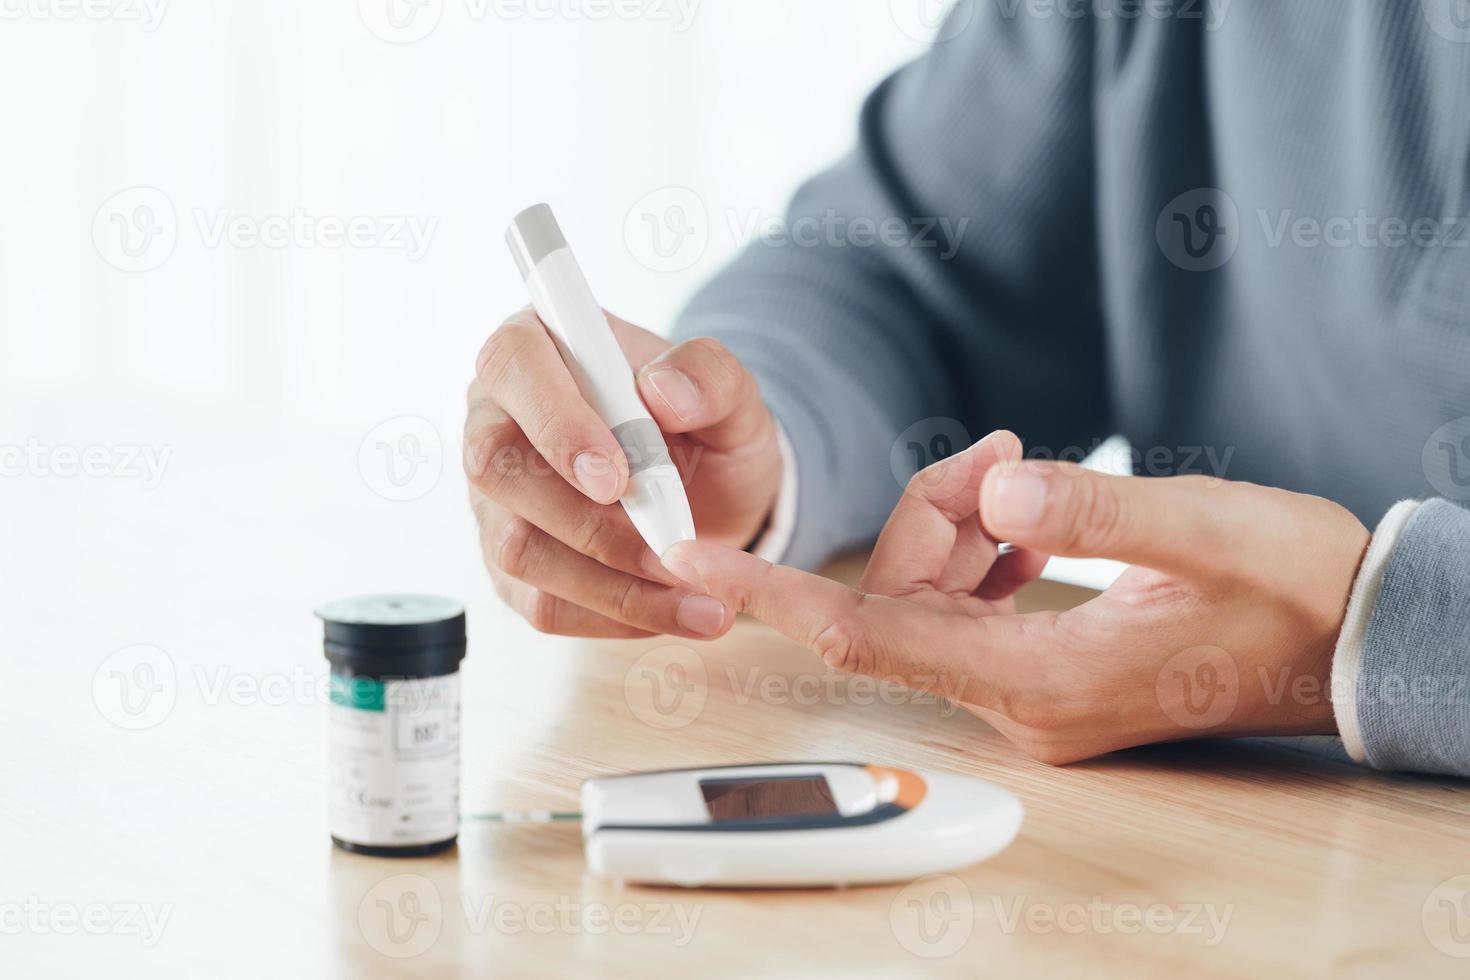 uomo asiatico che usa la lancetta sul dito per controllare il livello di zucchero nel sangue mediante glucometro, assistenza sanitaria e medica, diabete, concetto di glicemia foto